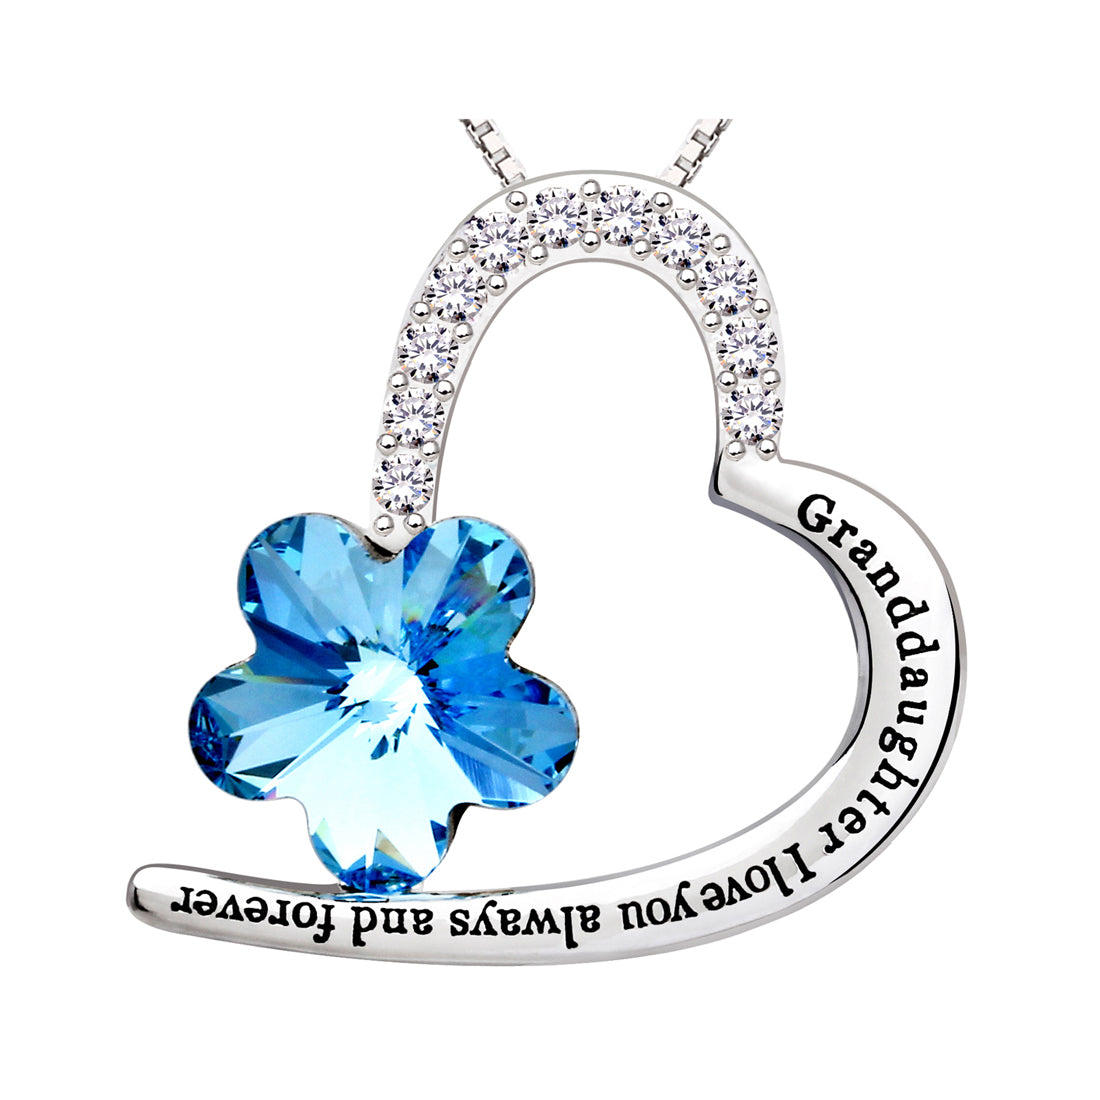 ALOV Jewelry Sterlingsilber-Halskette mit Anhänger „Enkelin, ich liebe dich immer und für immer“, Liebesherz, blauer Kristall und Zirkonia